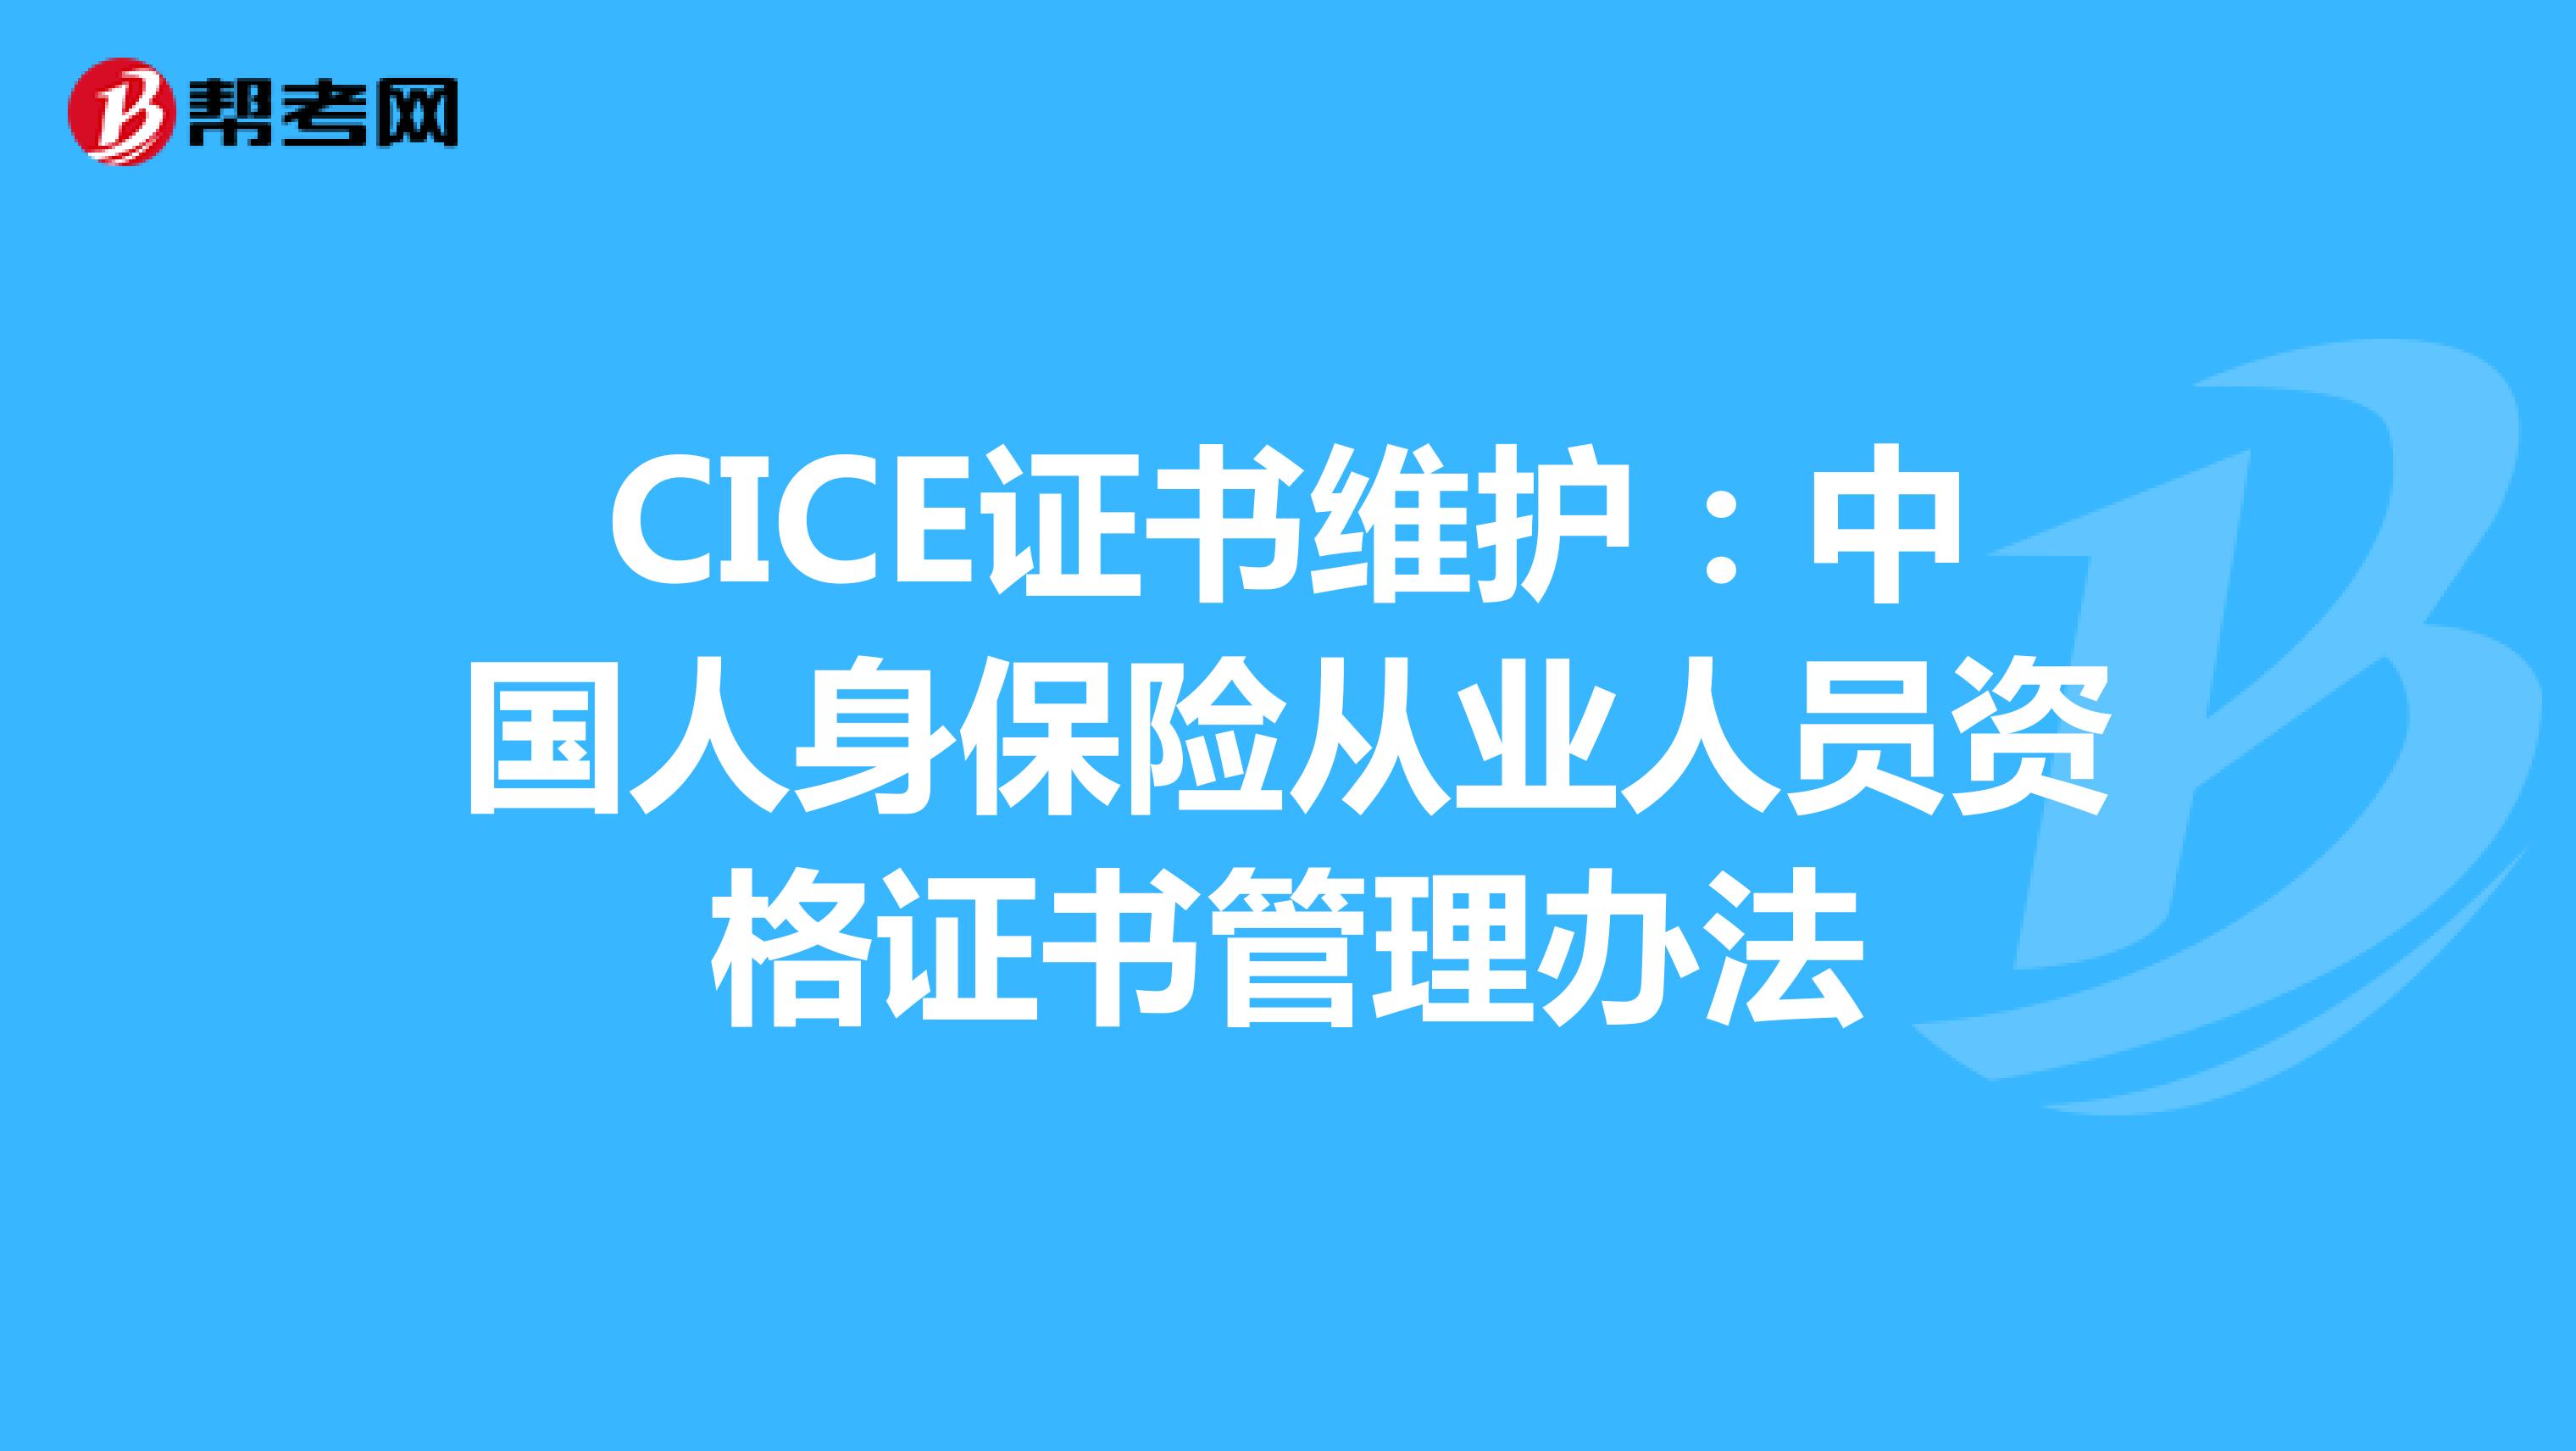 CICE证书维护：中国人身保险从业人员资格证书管理办法